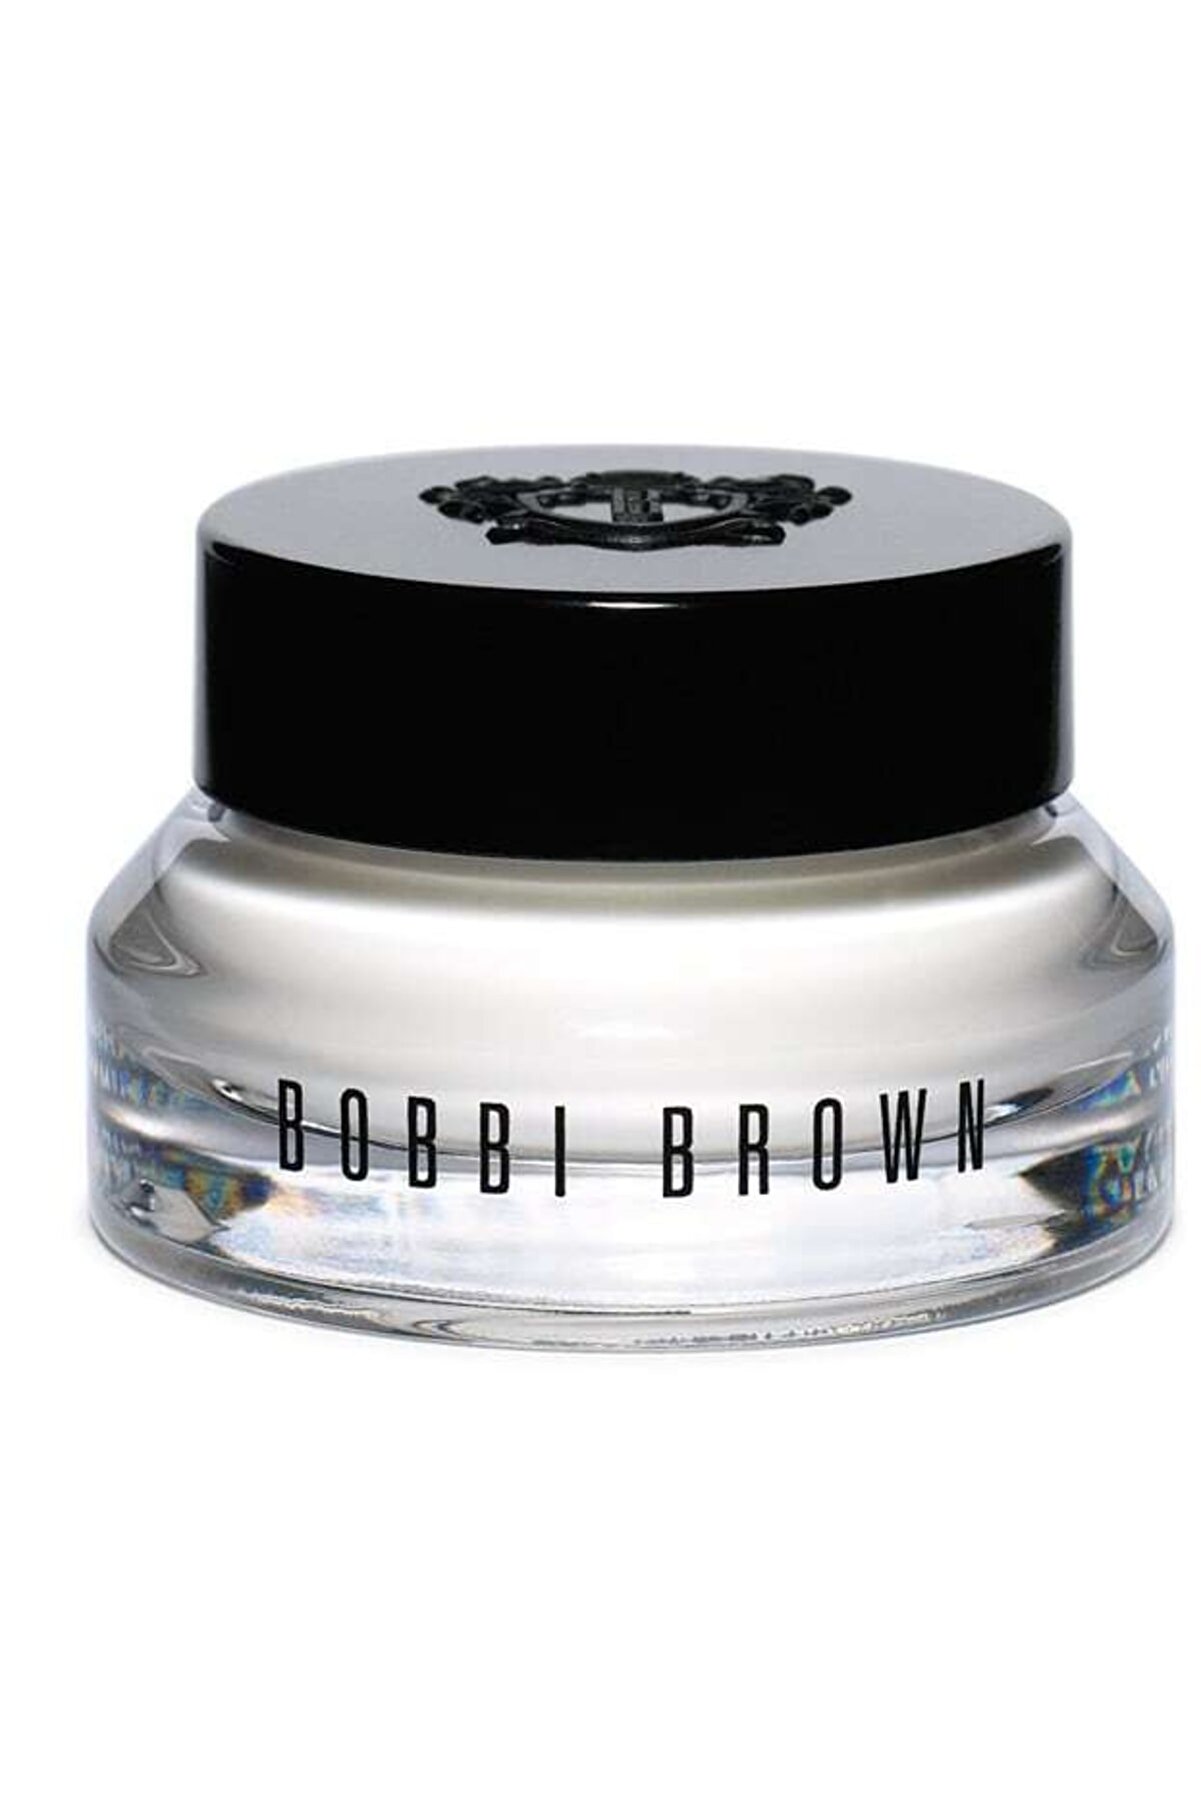 Bobbi Brown Hydrating Eye Cream / Nemlendirici Göz Kremi 15 ml 716170079431